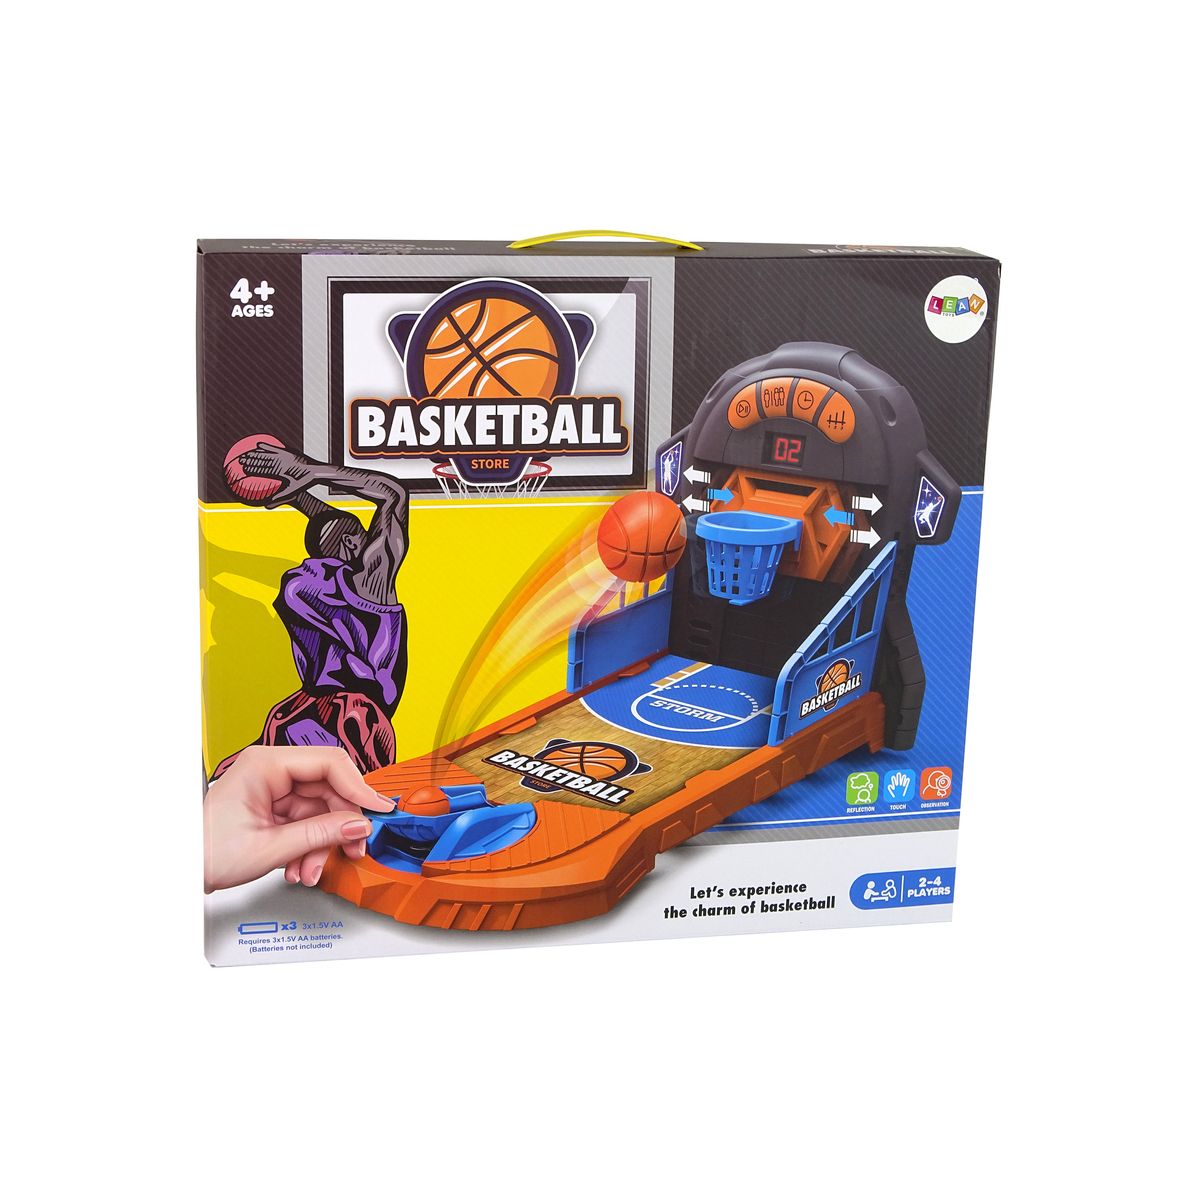 Gra zręcznościowa Lean mini koszykówka (13280)